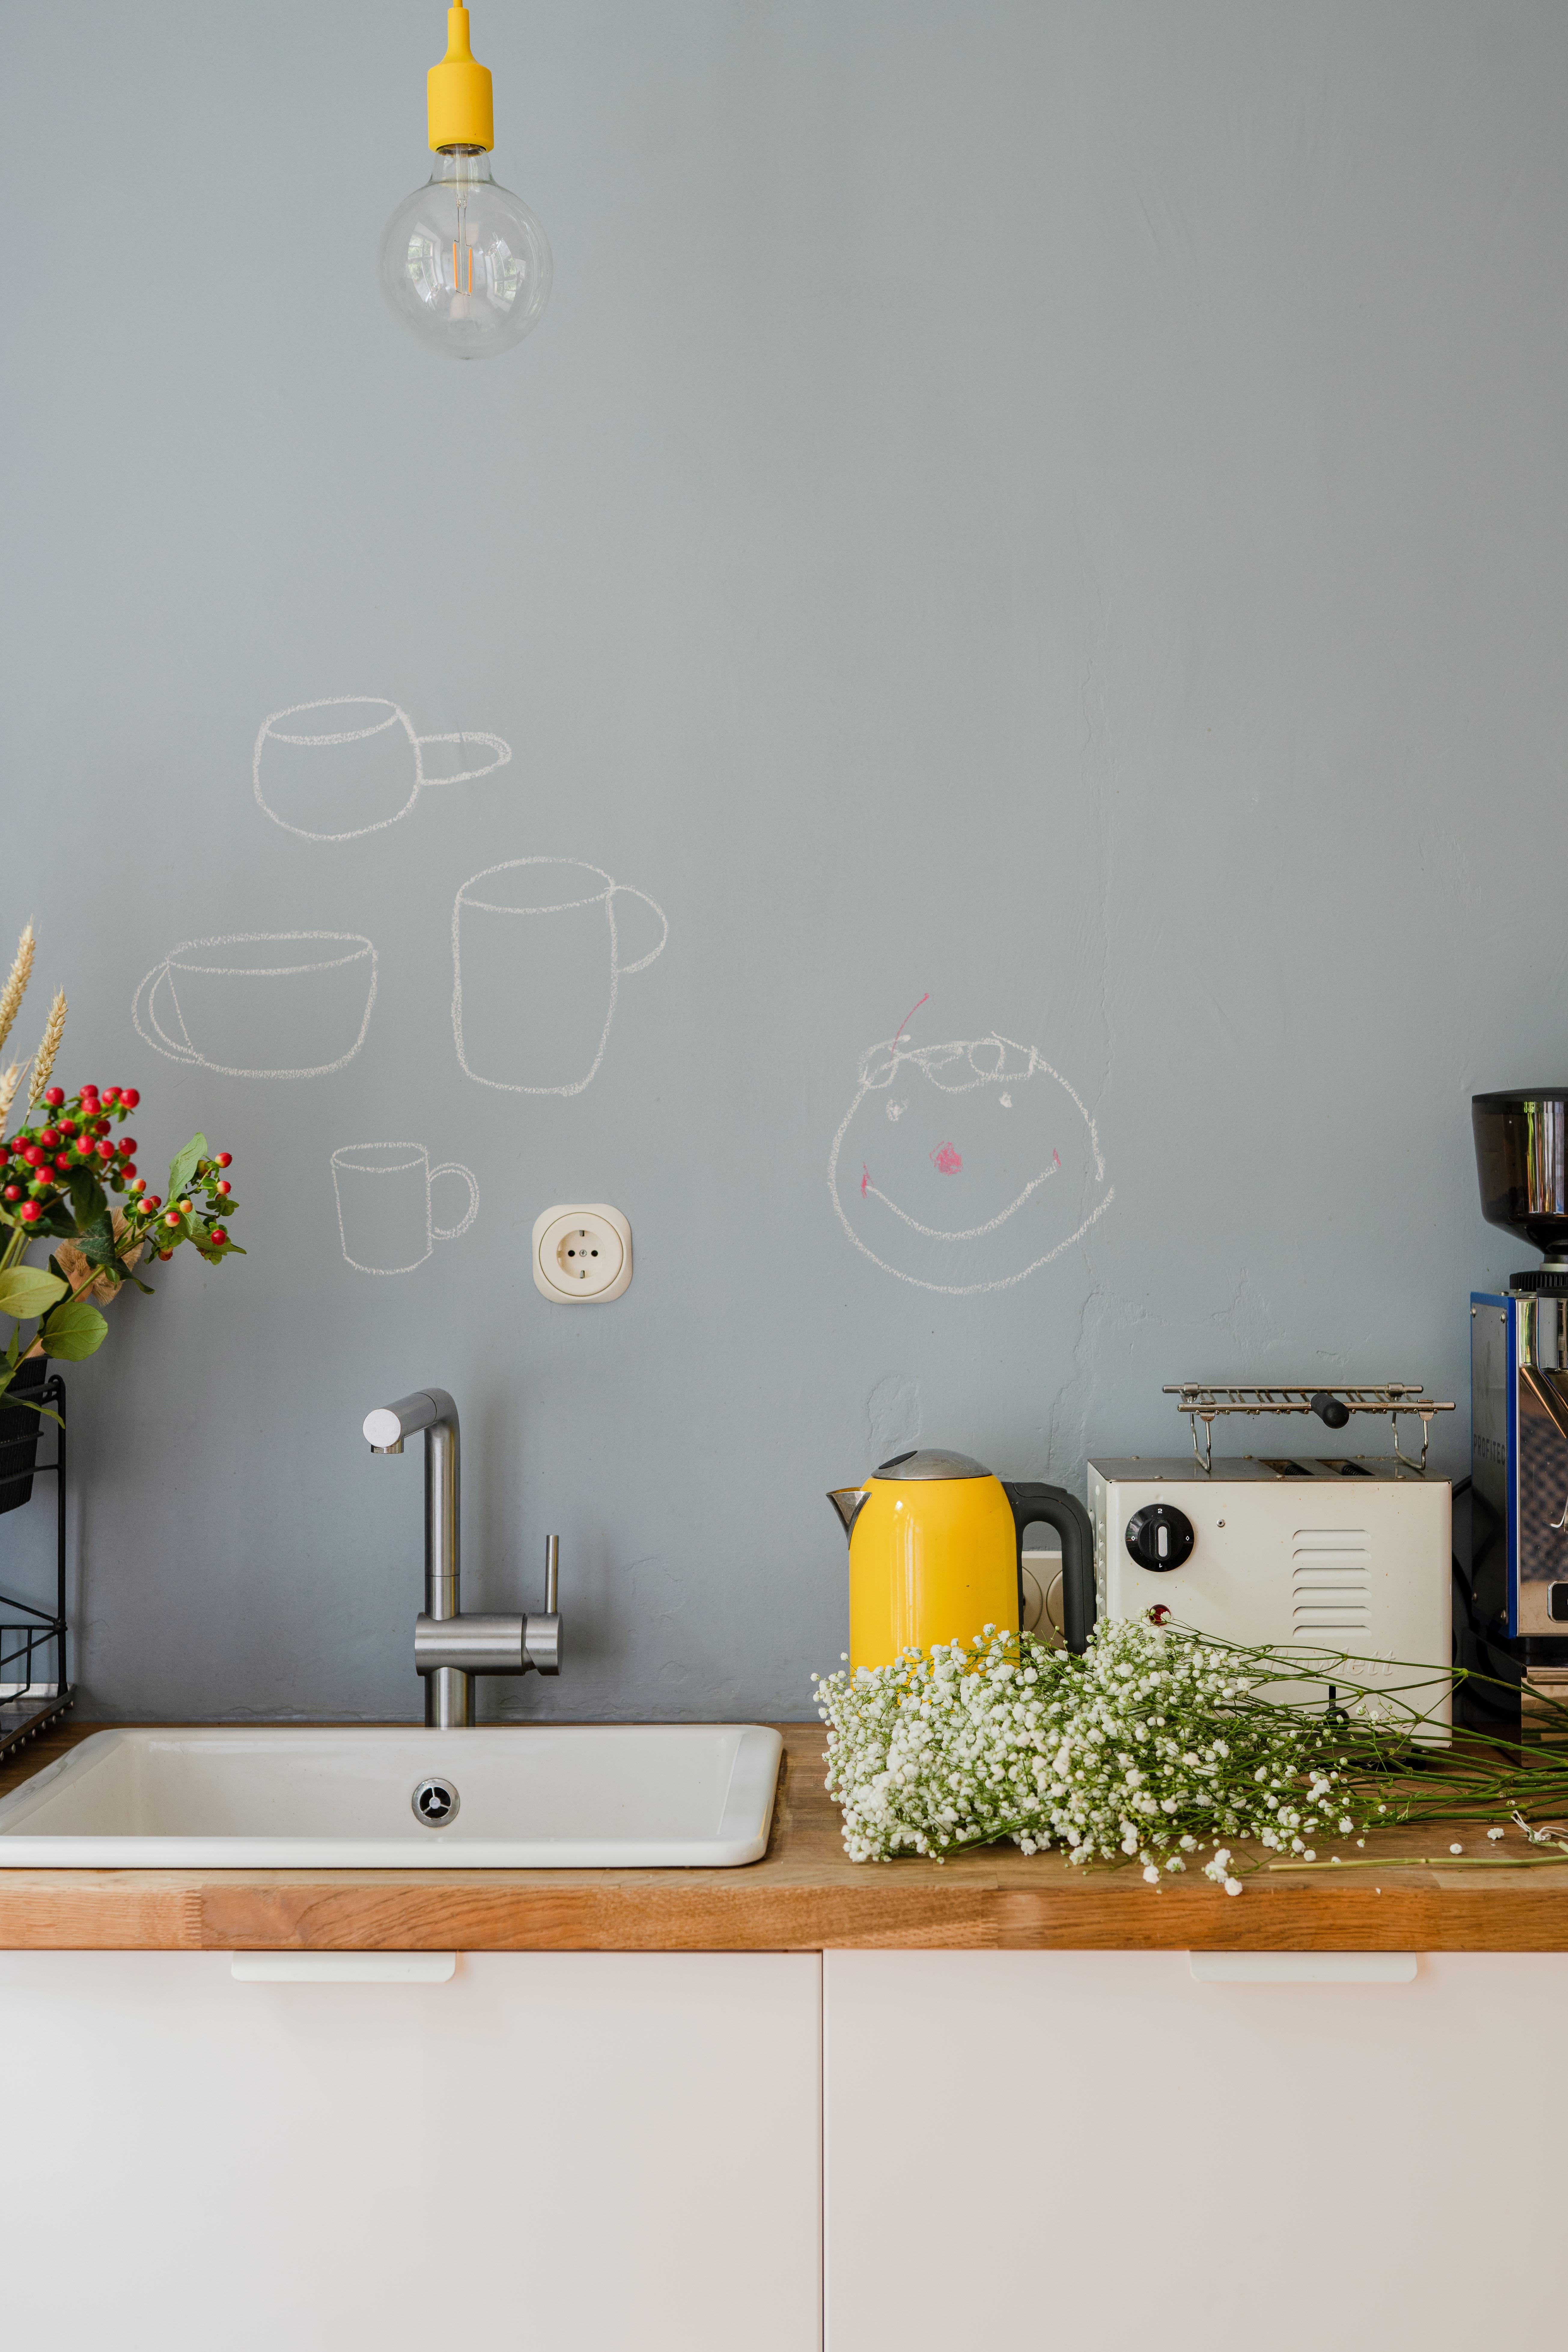 Anmalen erlaubt: Die blaugraue Küchenwand wurde mit transparenter Tafelfarbe beschichtet. #homestorydonnerstagsonntag